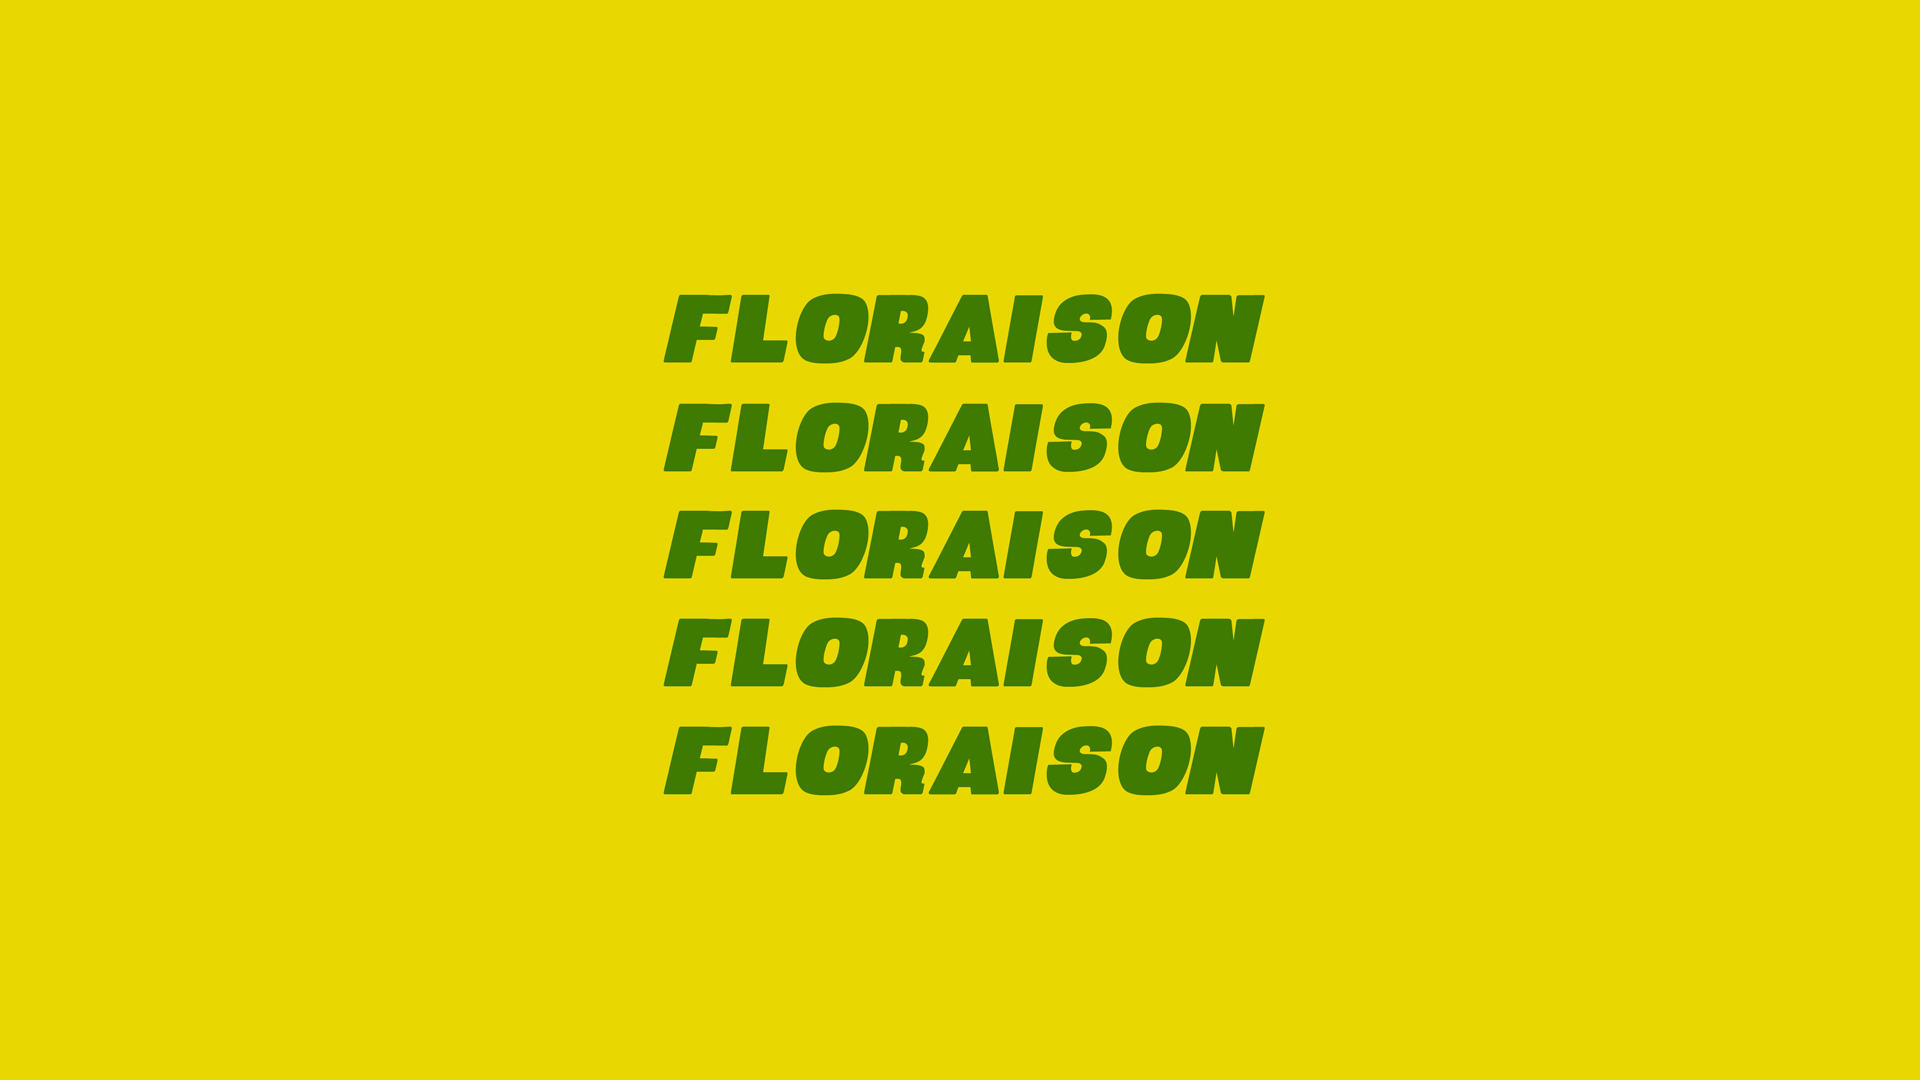 Floraison from Le Garçon Saigon